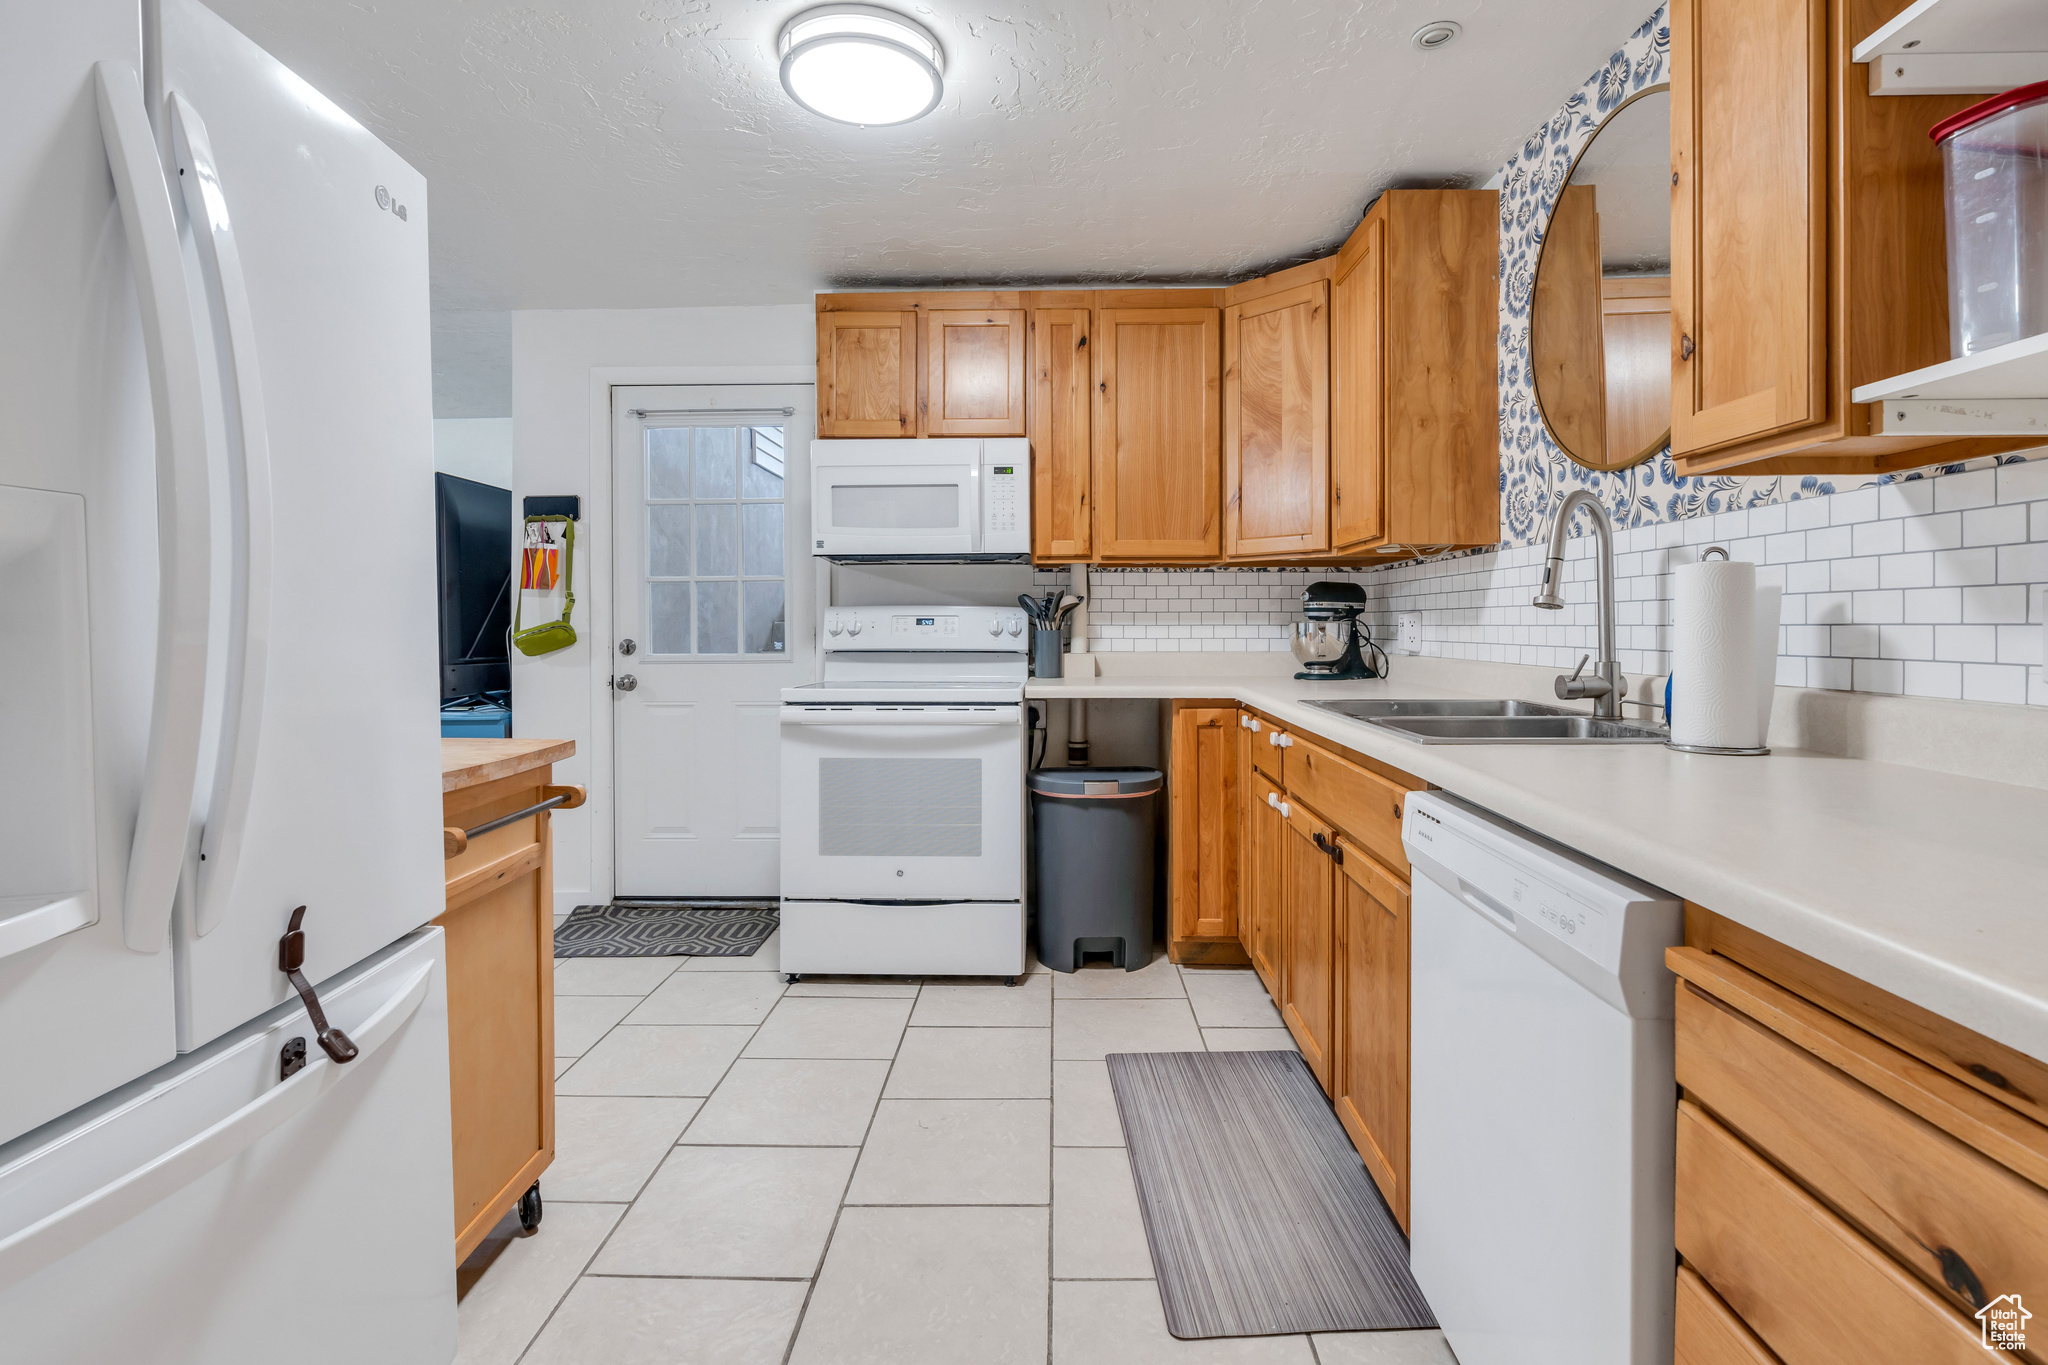 Kitchen with sink, white appliances, tasteful backsplash, and light tile floors